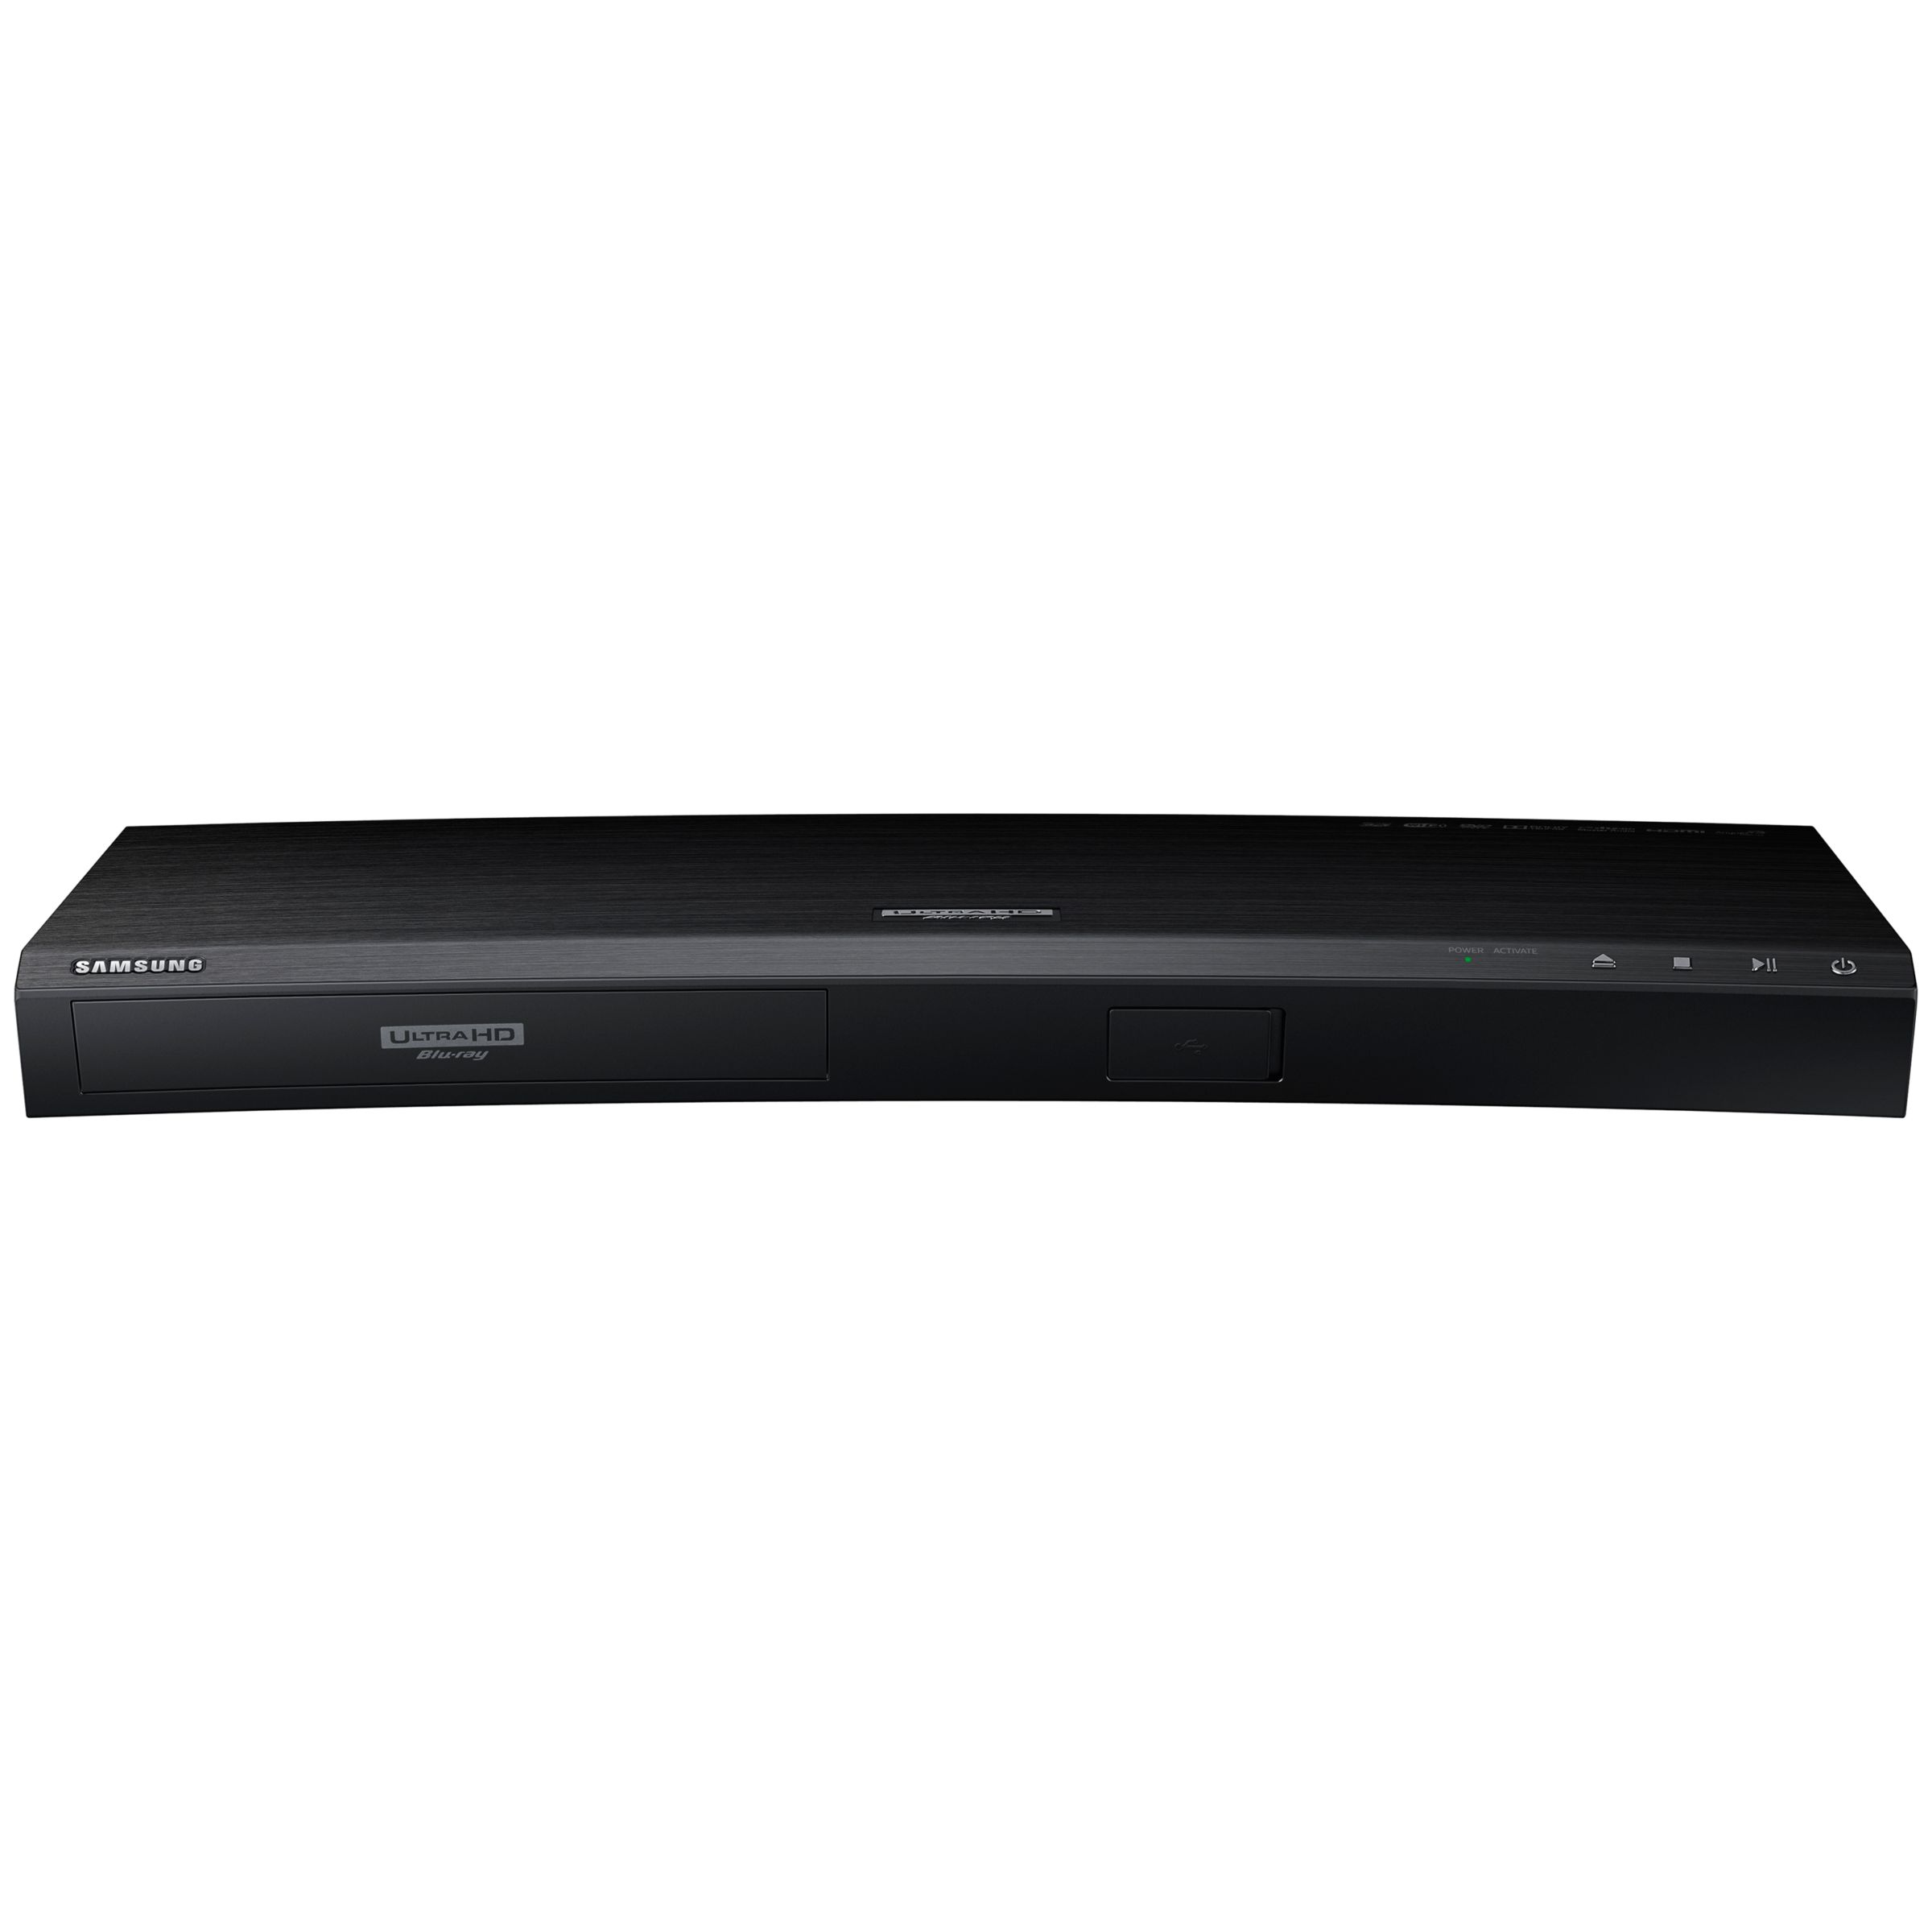 Samsung UBD-K8500 4K UHD Blu-Ray/DVD Player, Black